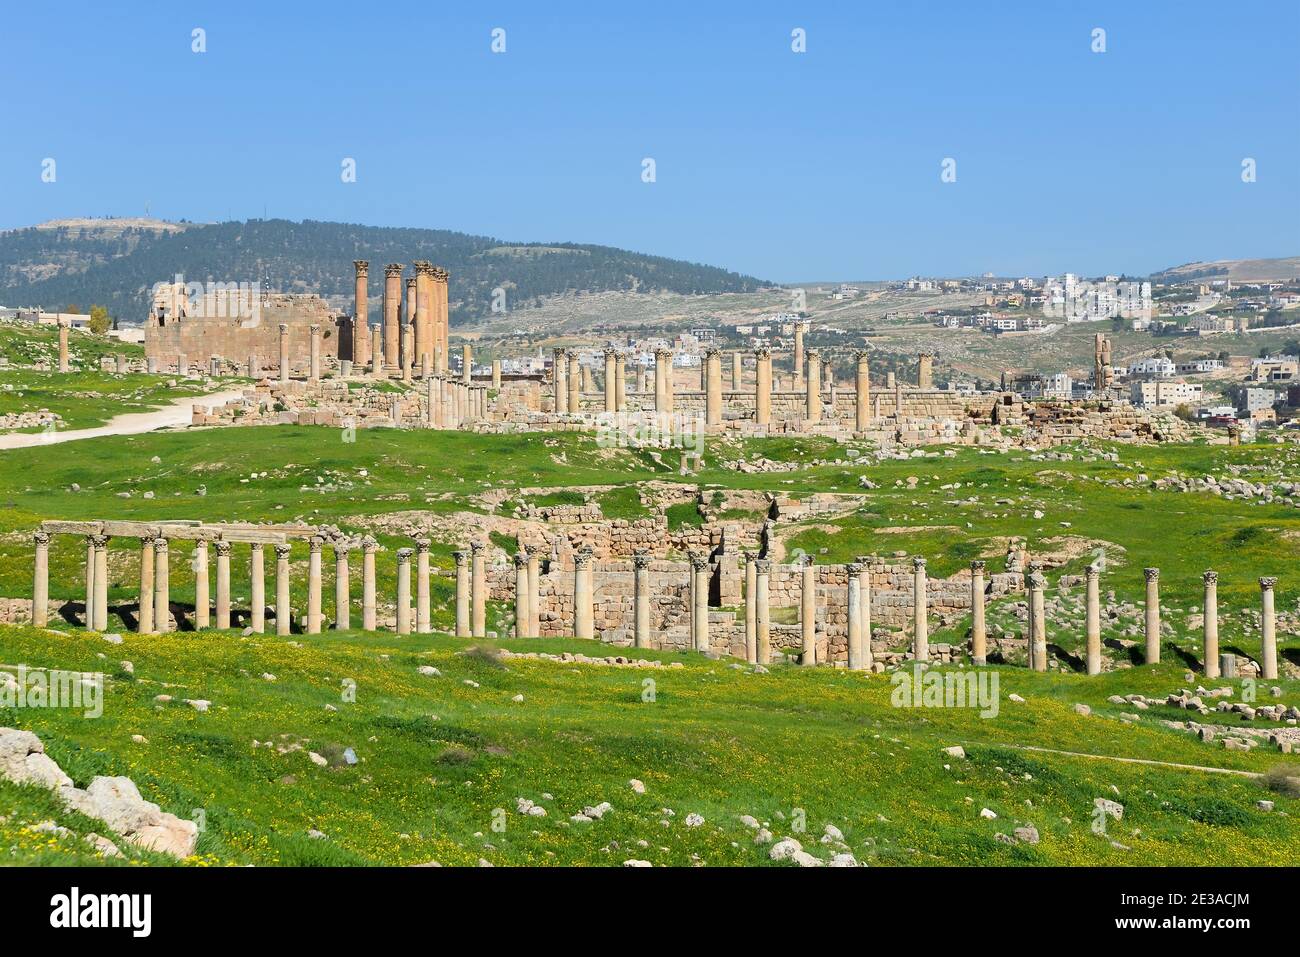 Colonnes de l'ancienne ville romaine et byzantine de Jerash en Jordanie. Plusieurs colonnes conservées sur le site touristique de la vieille ville de Gerasa. Banque D'Images